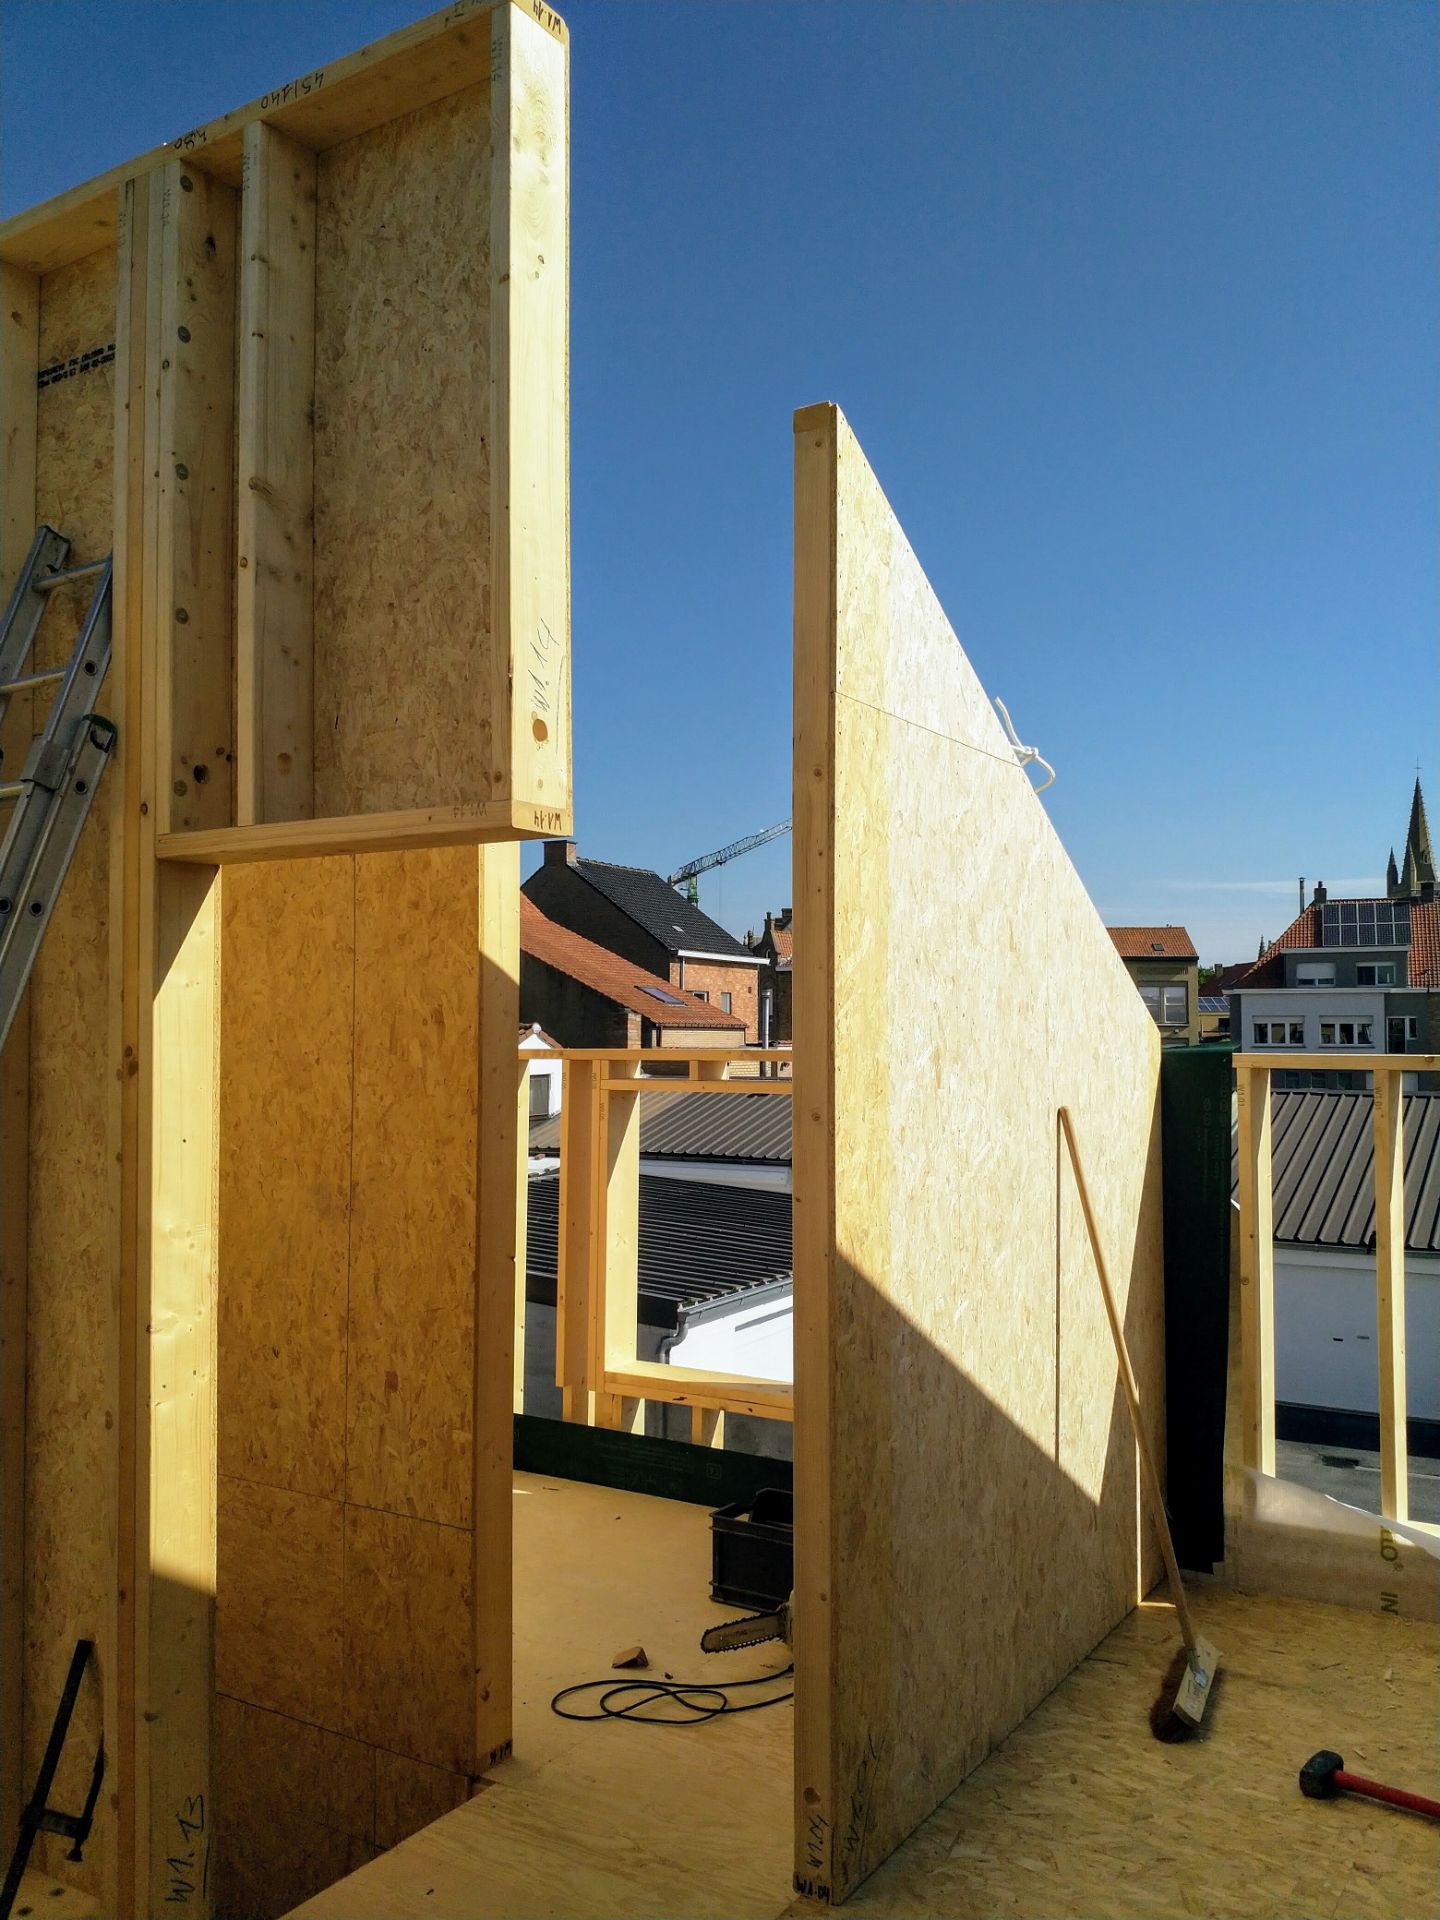 méli mélo - Hood cv - houtbouw ontwerp en realisatie van energiezuinige woningen